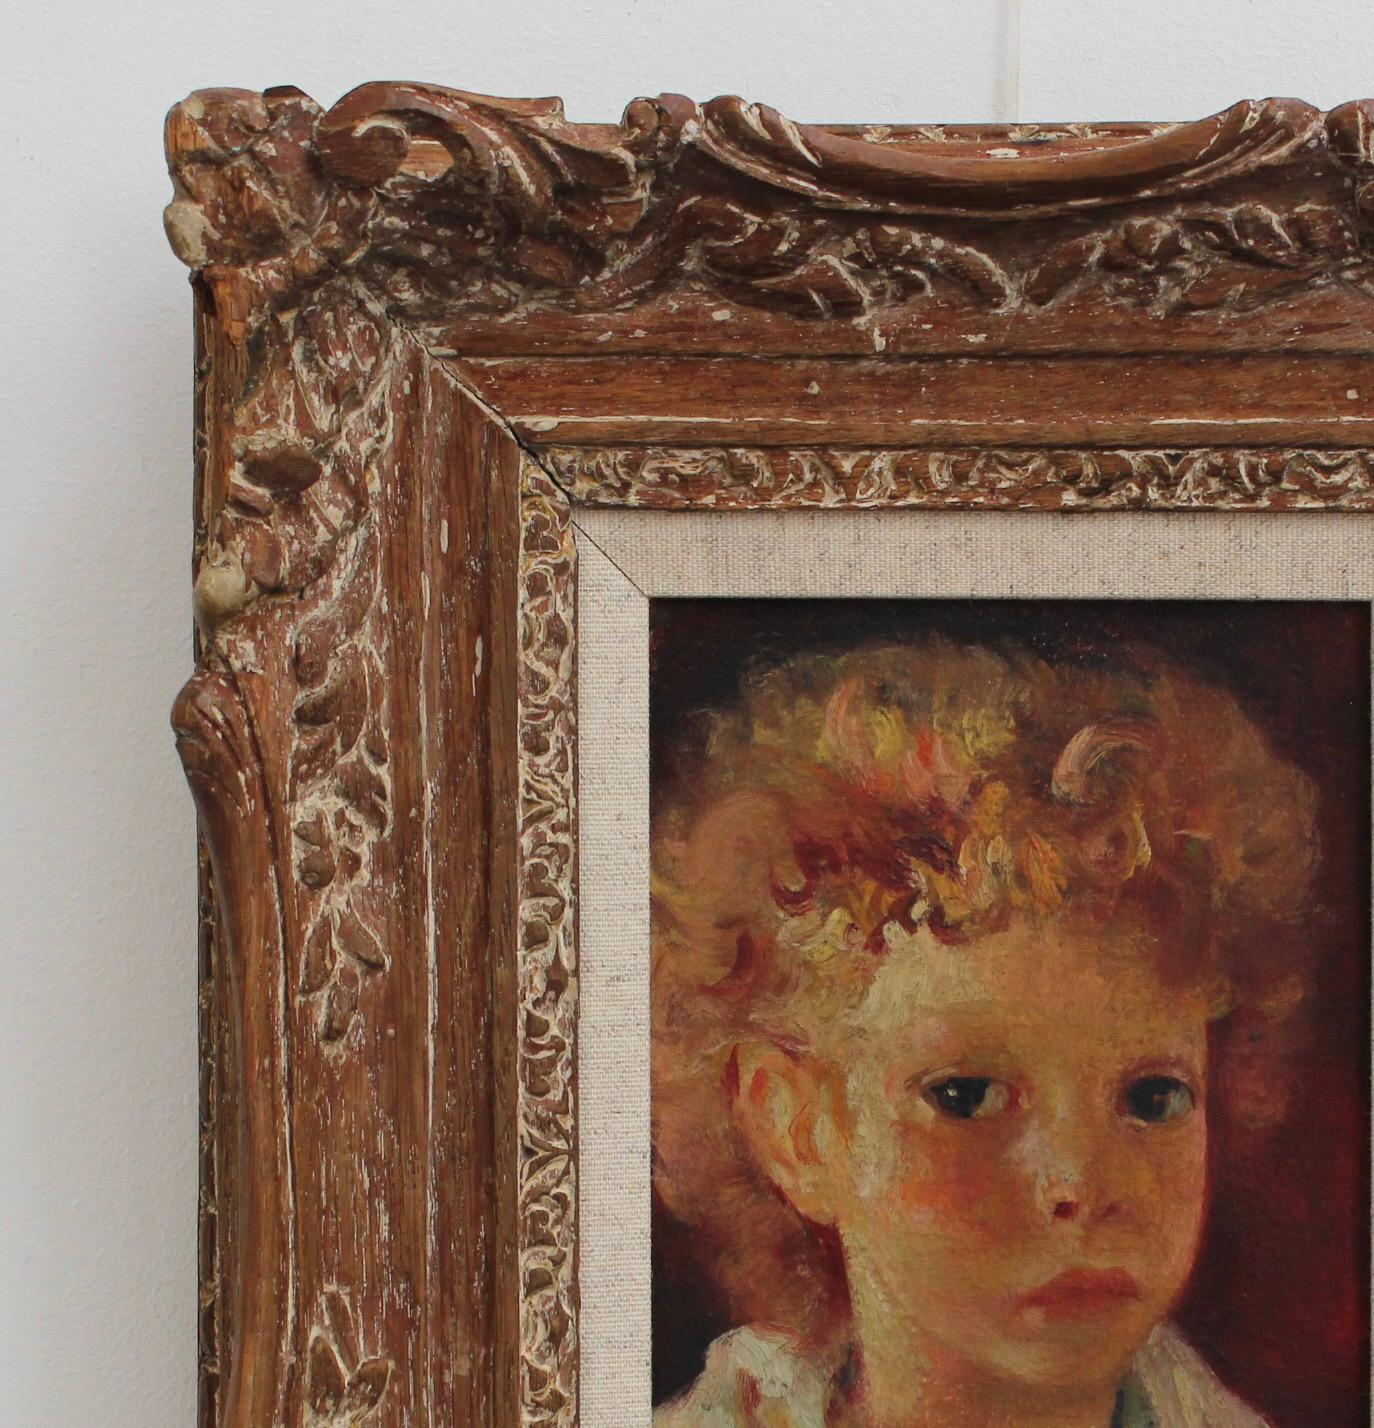 portrait de garçon par Luigi Corbellini (vers 1930). L'artiste a peint ce jeune garçon attachant dont le nom reste inconnu. L'expression légèrement timide de son visage est peut-être due à sa curiosité quant à la raison pour laquelle il passe sa